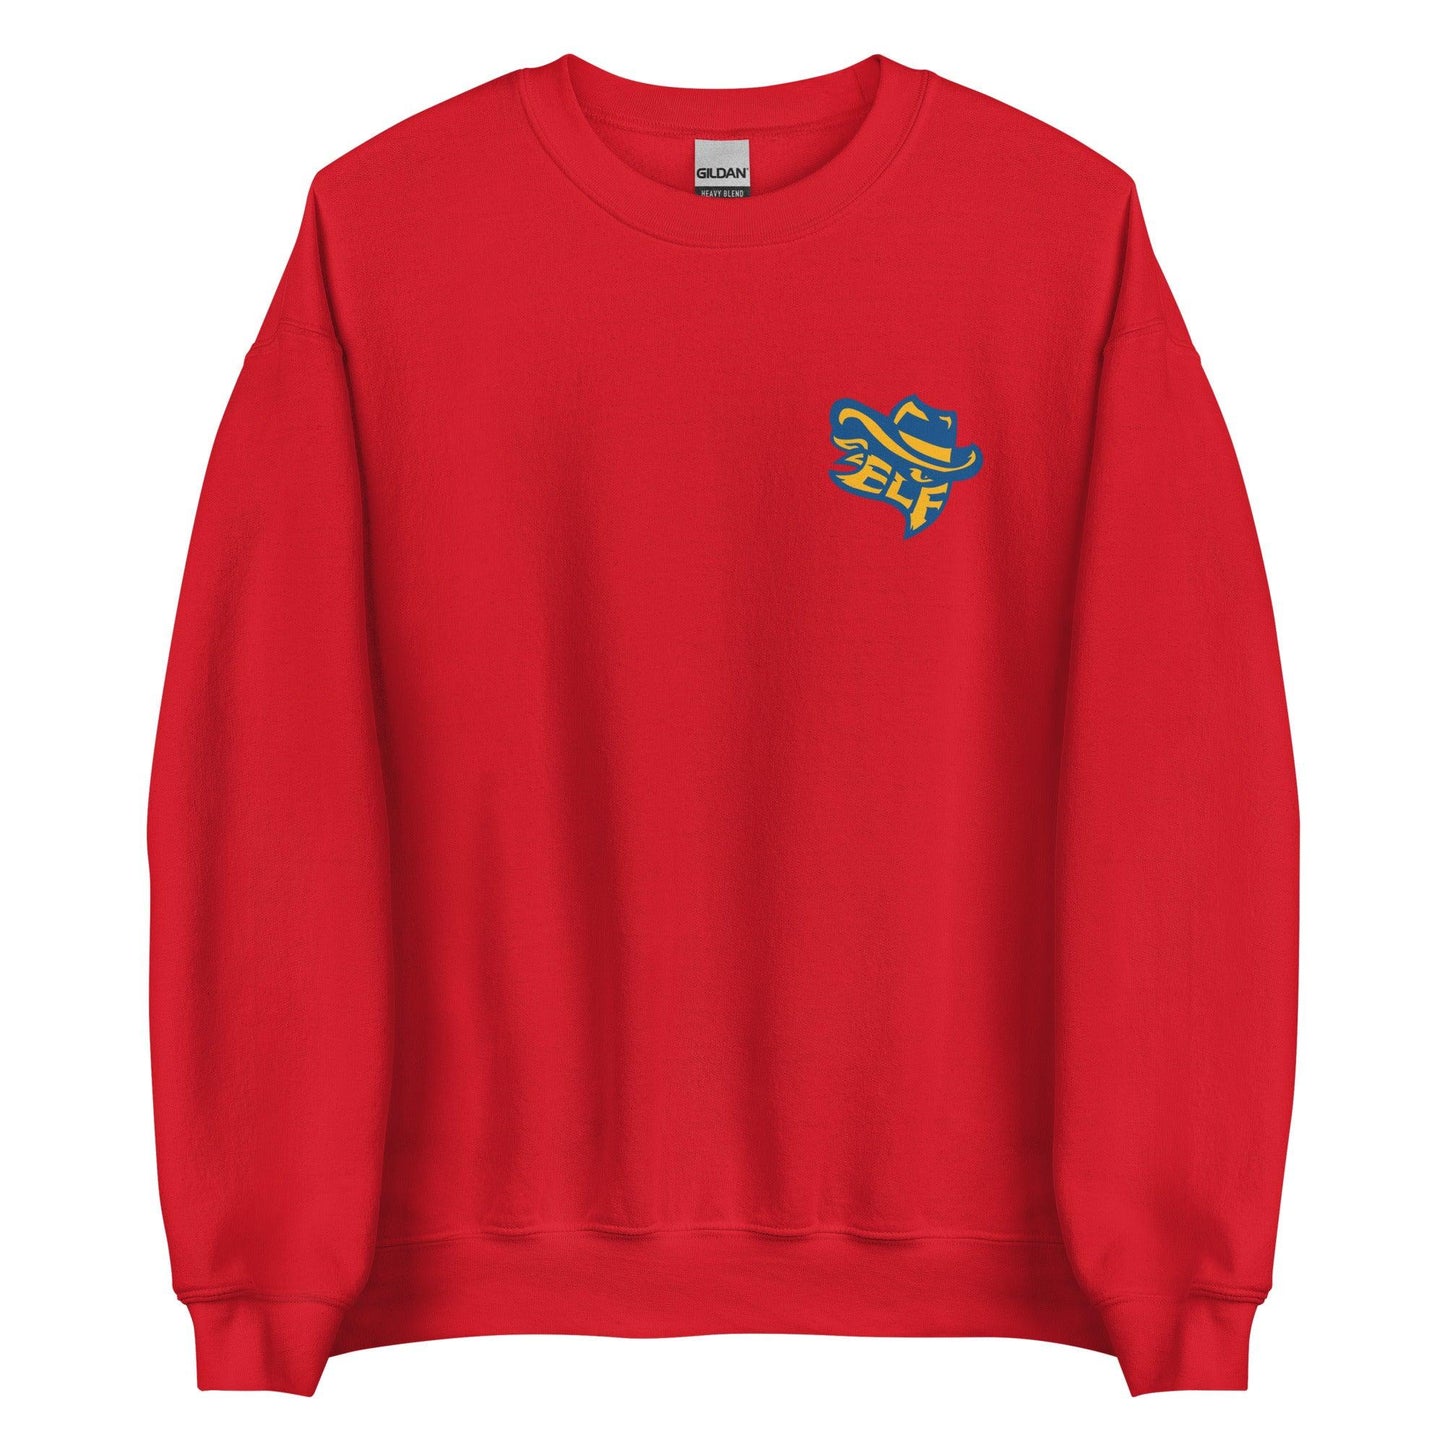 Evan Ford "Essential" Sweatshirt - Fan Arch